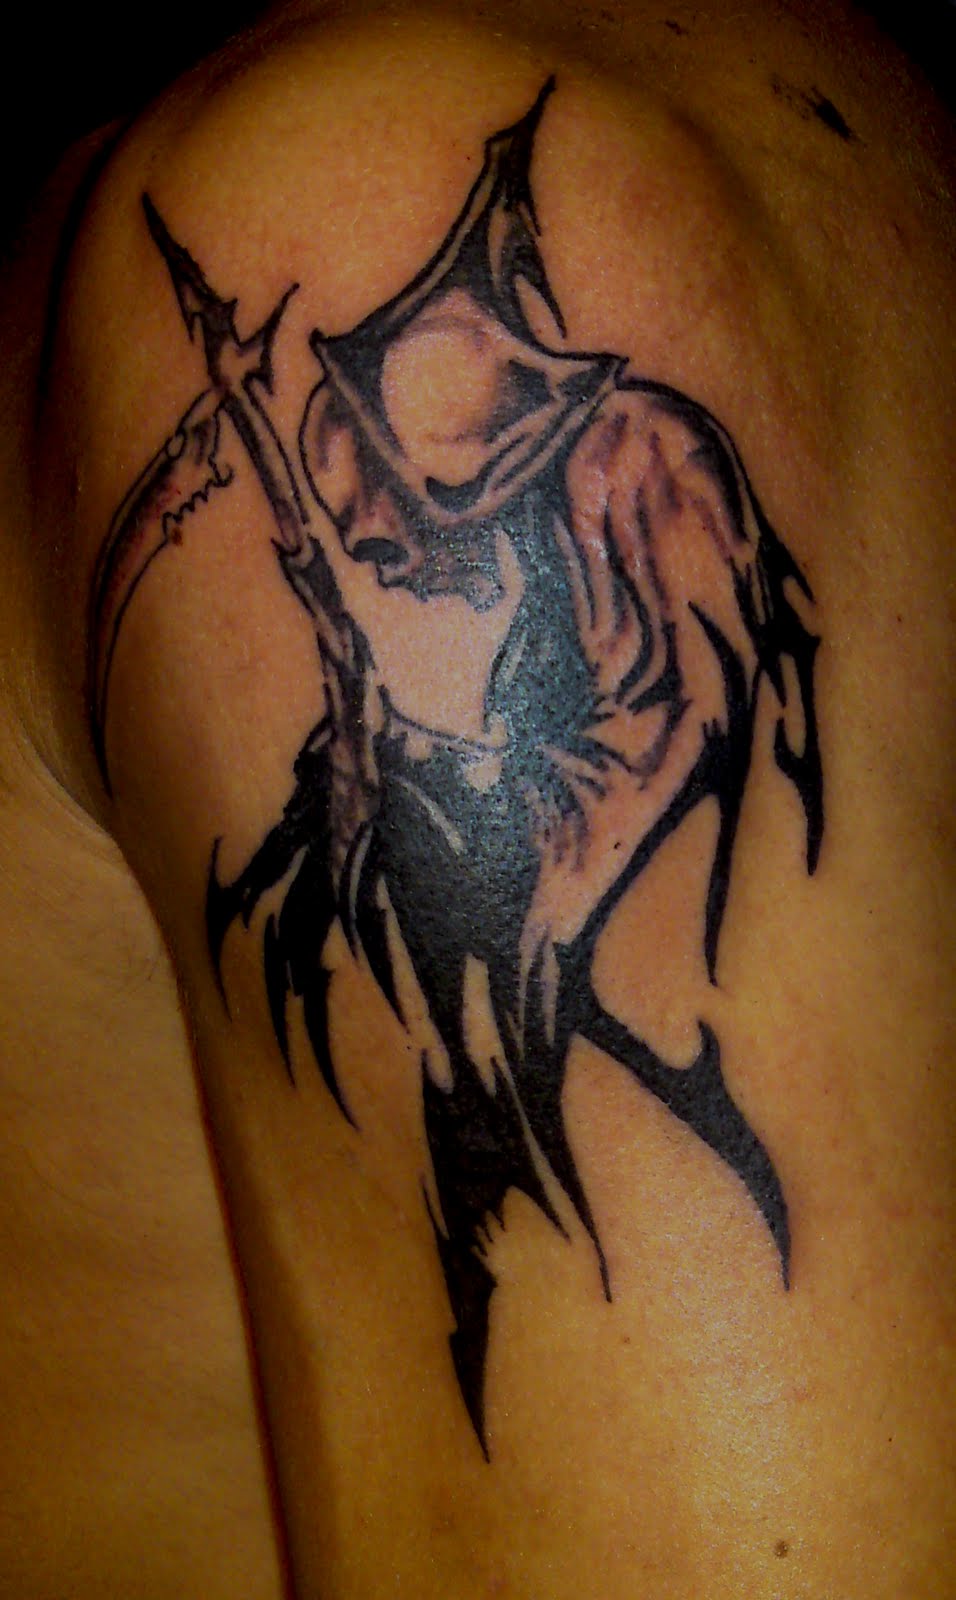 My Tattoo Designs: Death Tattoos